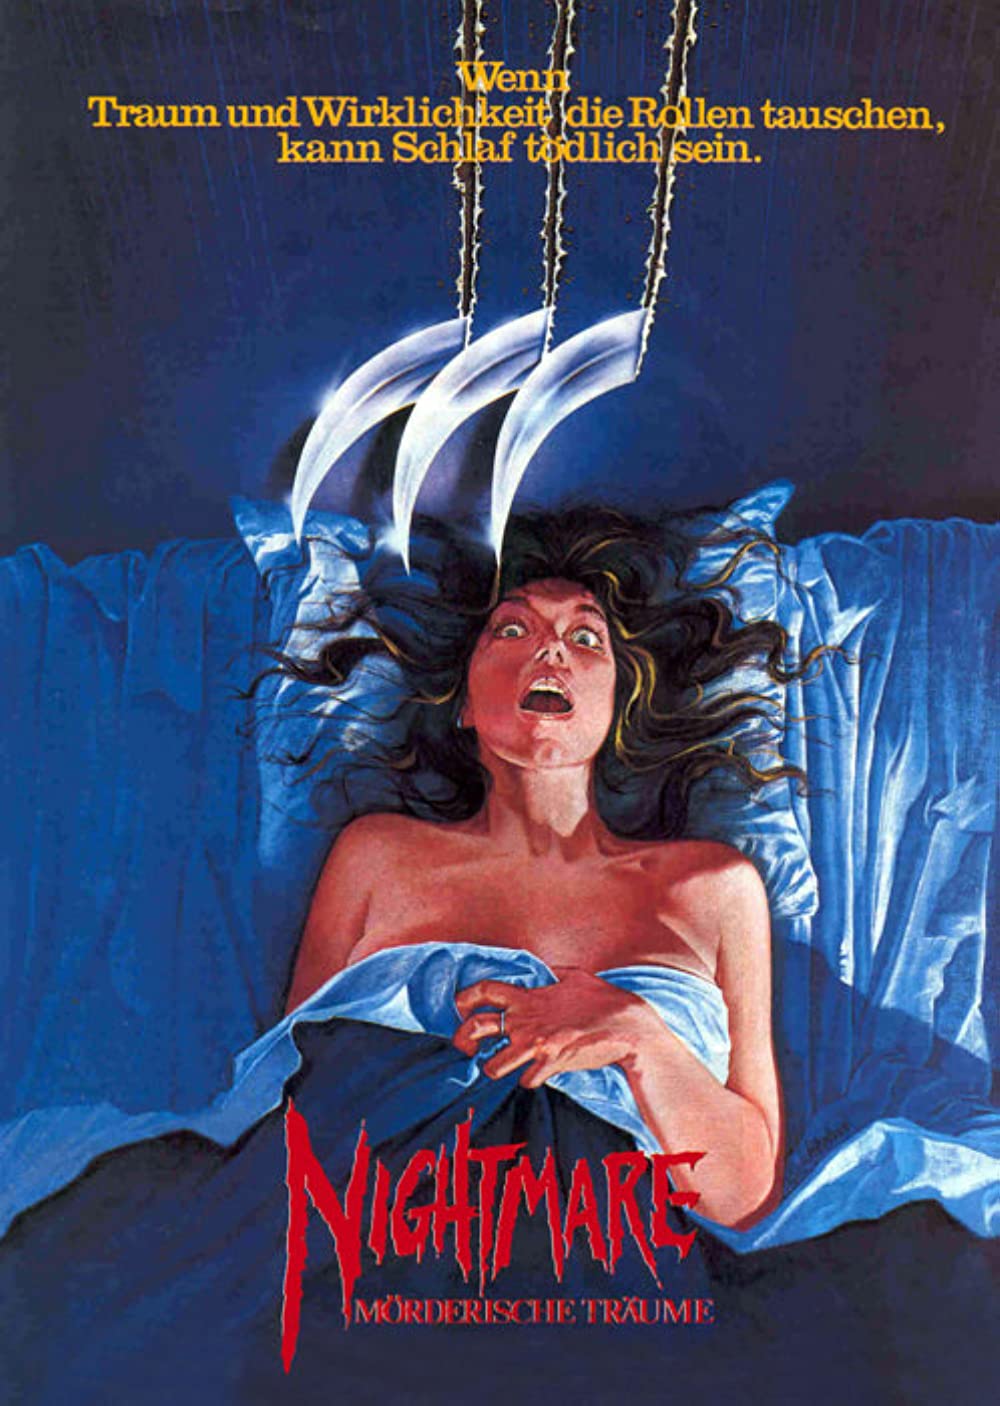 Filmbeschreibung zu Nightmare on Elm Street (OV)